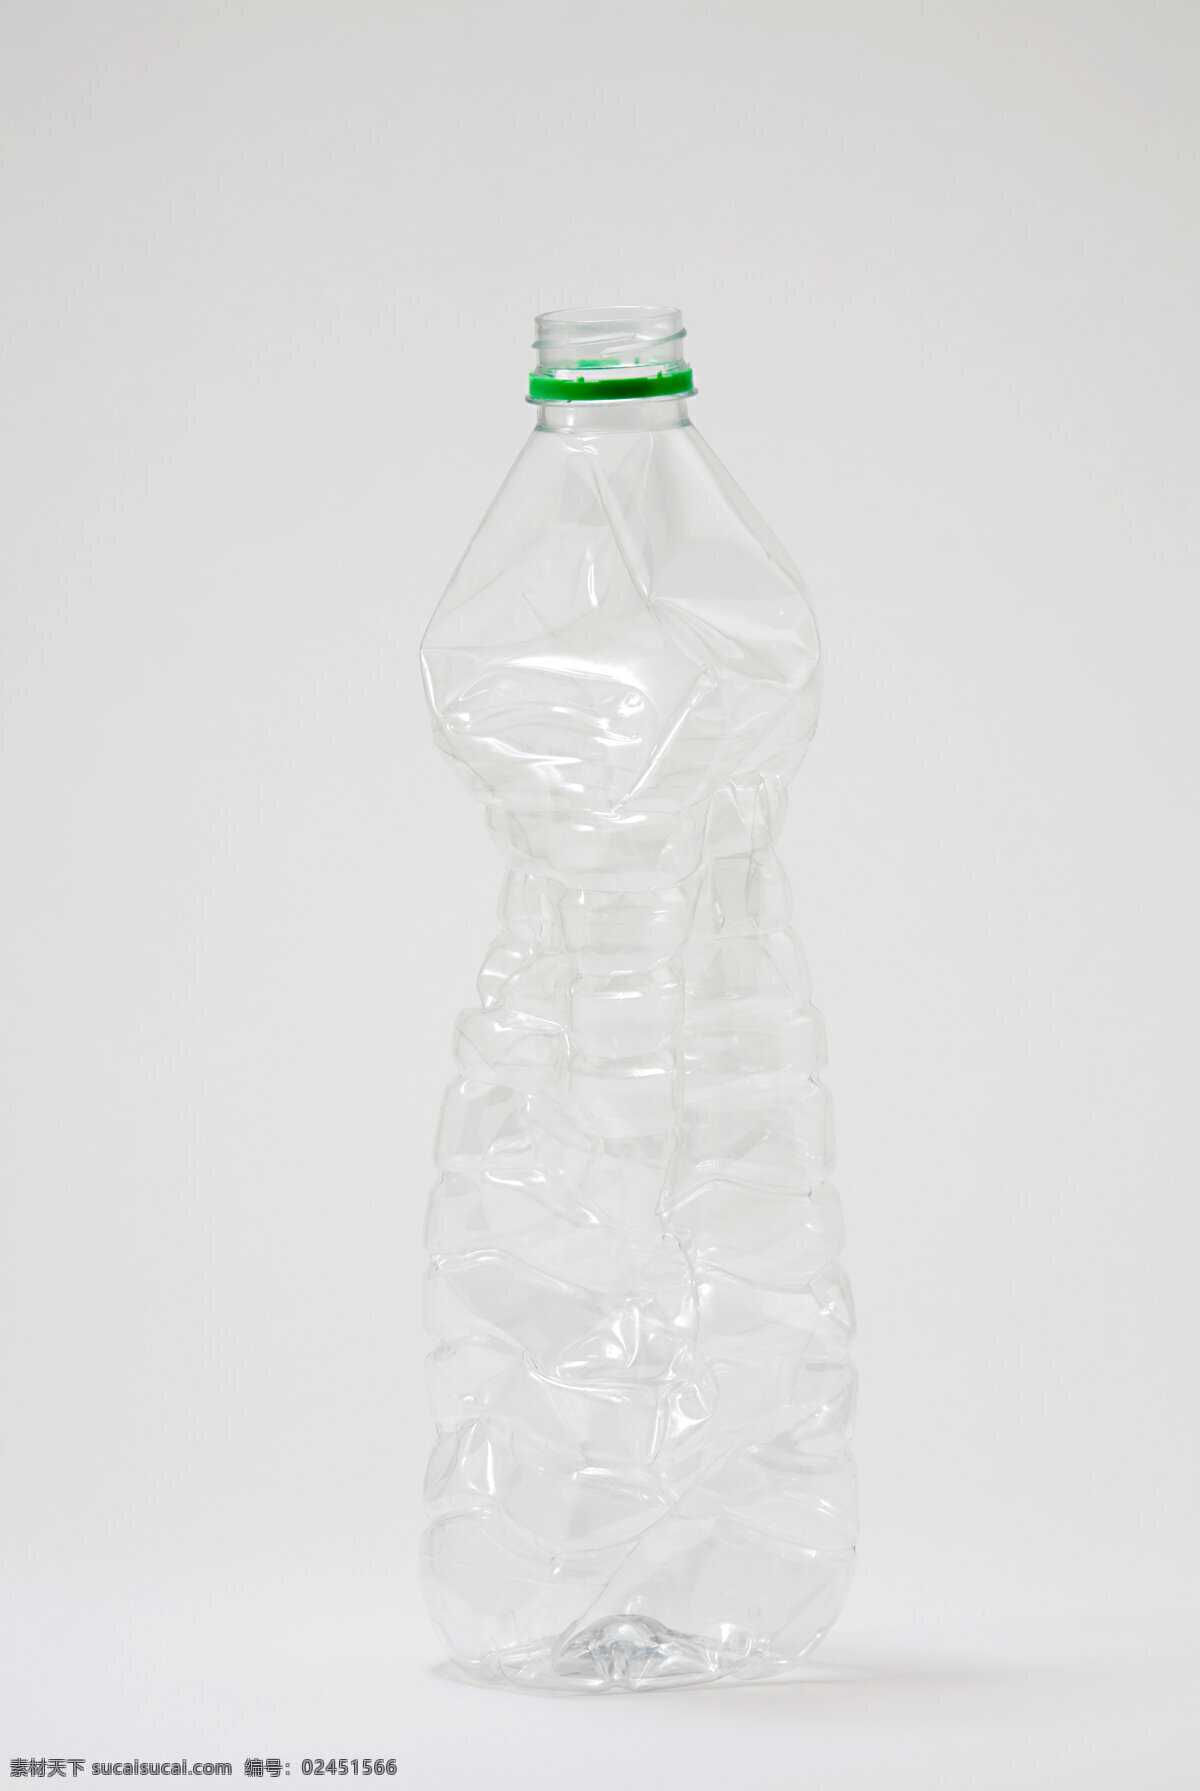 饮料 瓶子 生活素材 生活百科 废物 矿泉水瓶 废物矿泉水瓶 塑料瓶 废品 灰色